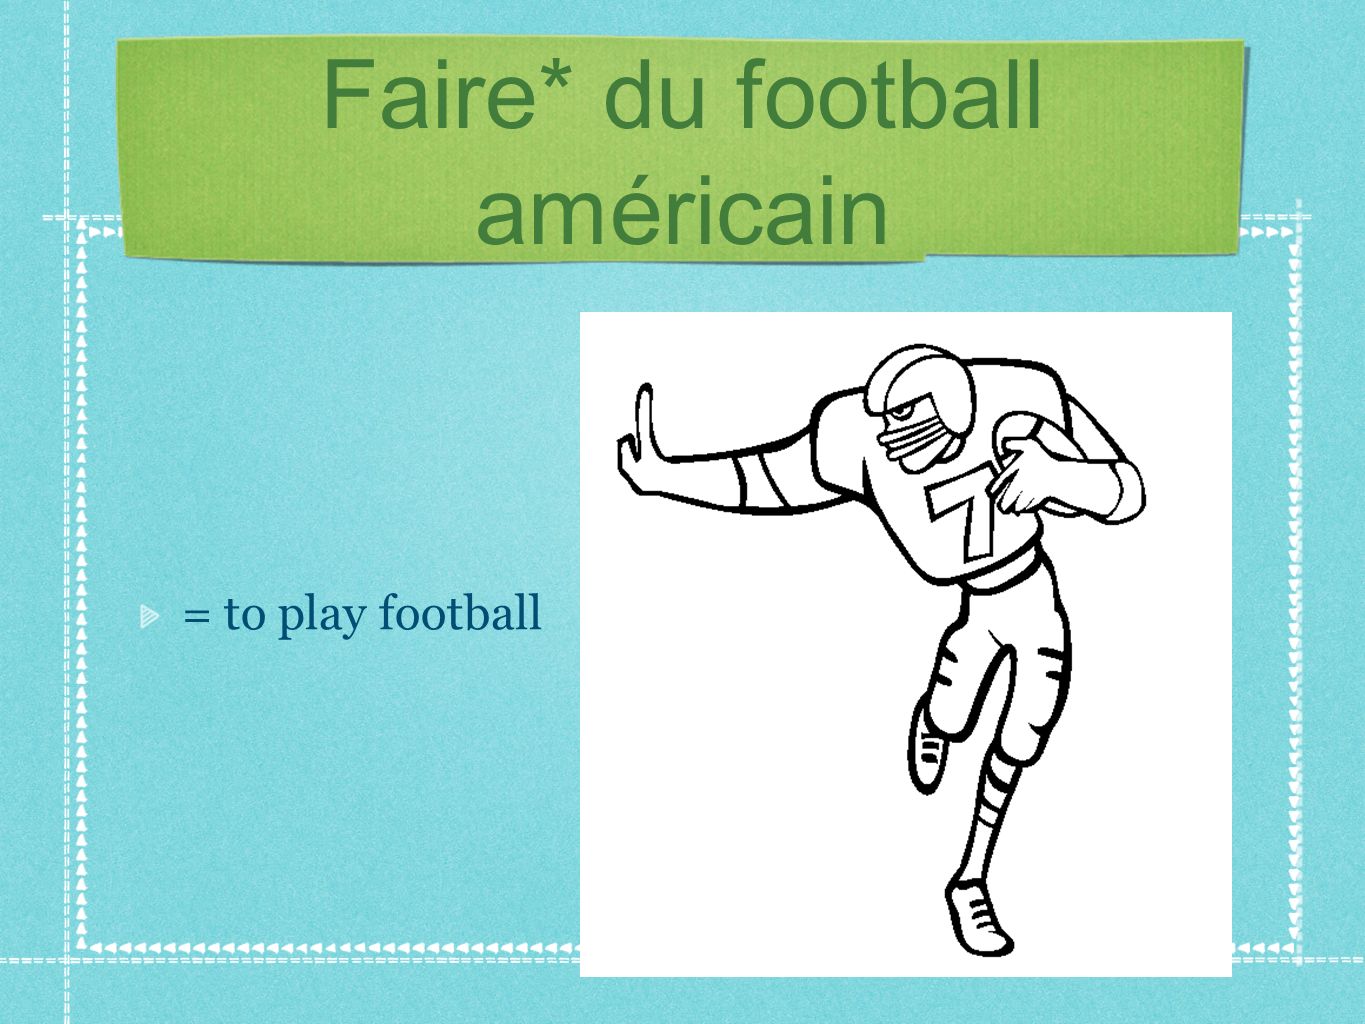 Faire* du football américain = to play football